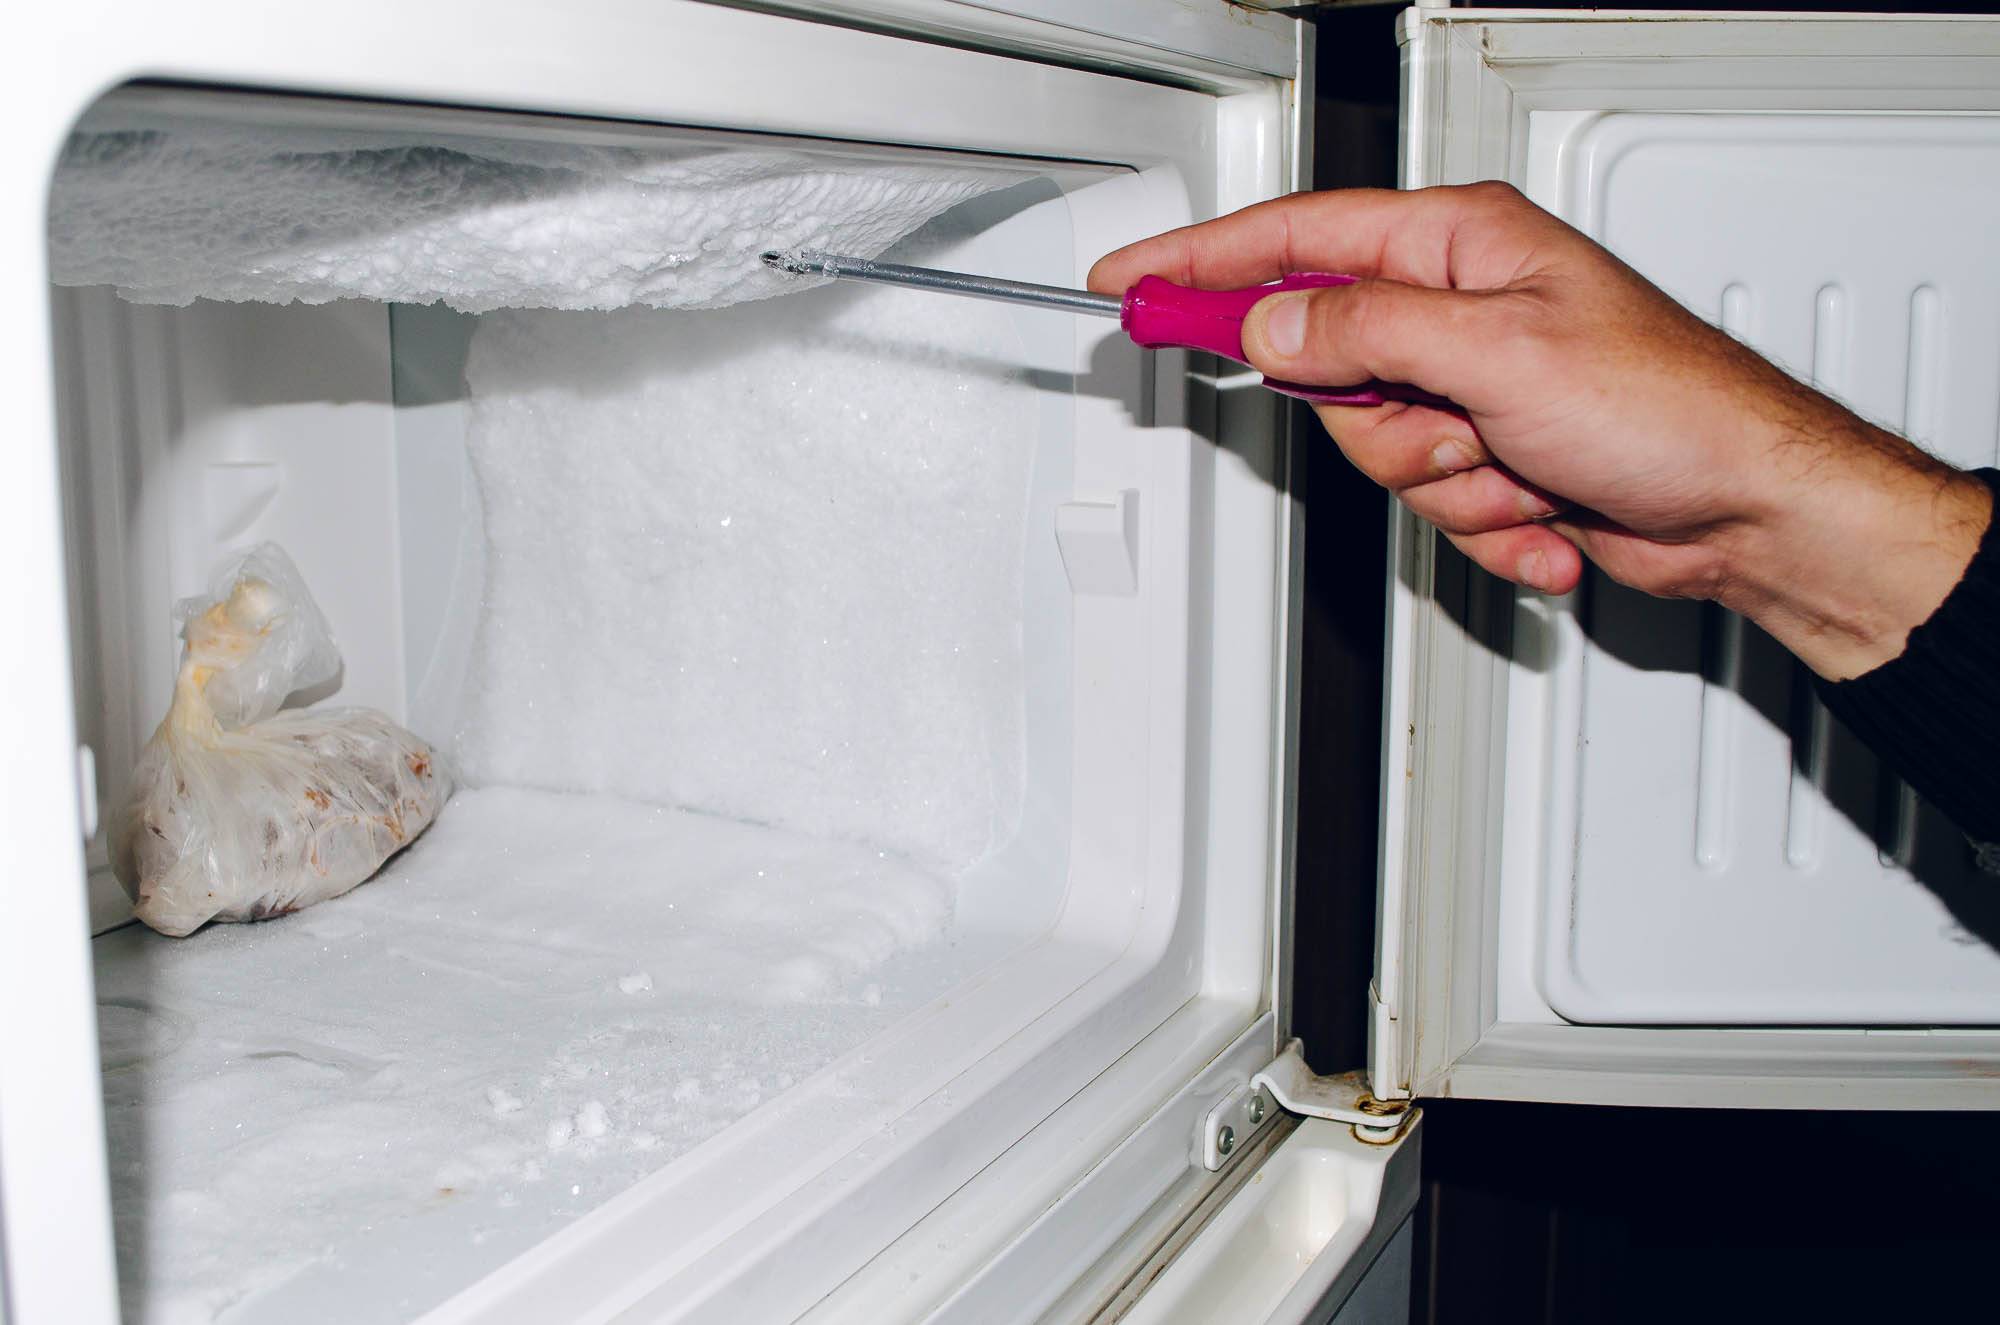 Размораживаем холодильник: 12 простых шагов